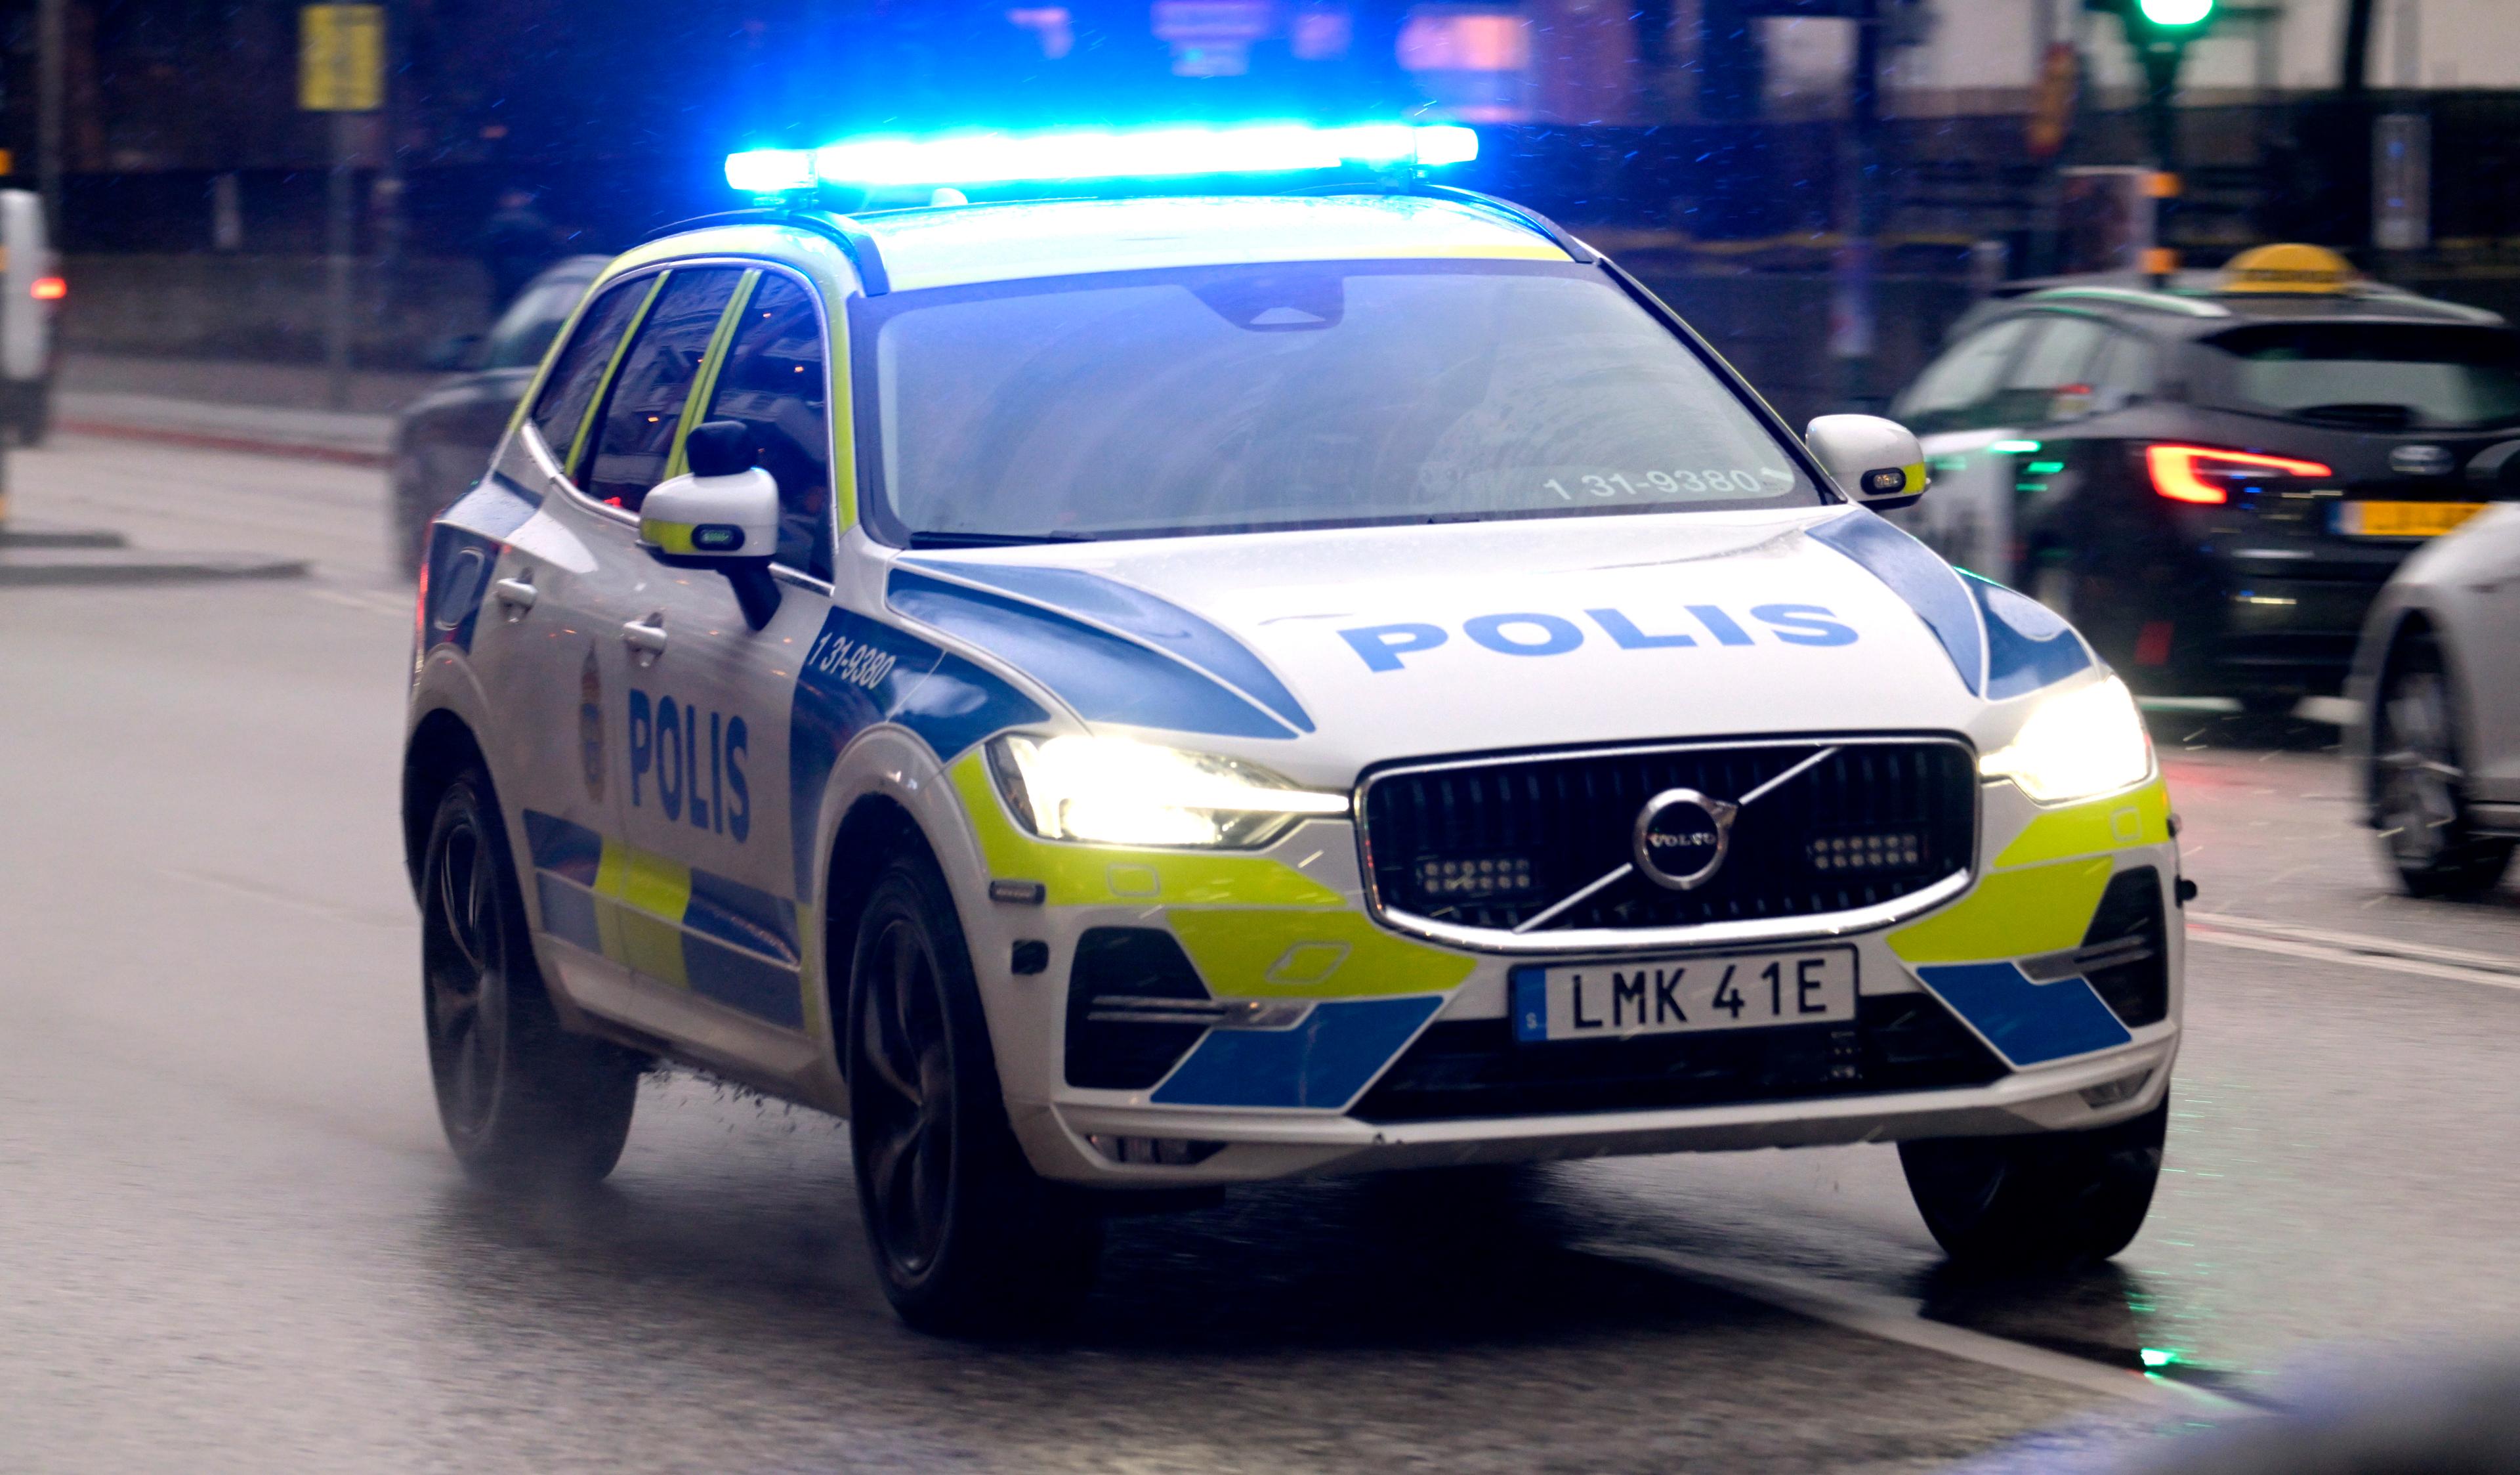 Polisen ryckte ut på ett larm om beväpnade män i Gävle, men det visade sig vara en filminspelning. Arkivbild. Foto: Janerik Henriksson/TT